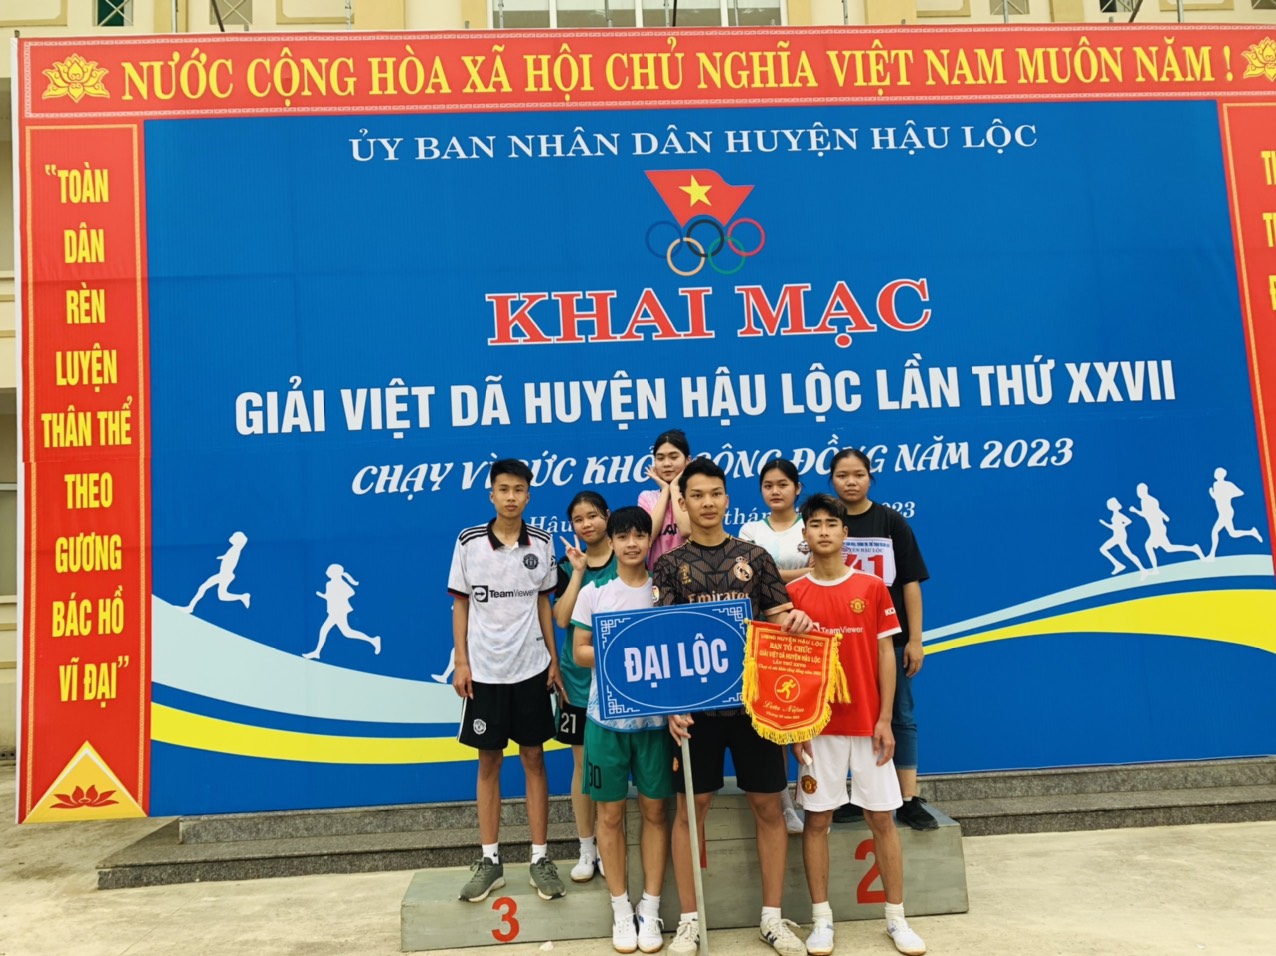 Đoàn Vận động viên xã Đại Lộc tham gia giải Việt dã huyện Hậu Lộc lần thứ XXVII năm 2023